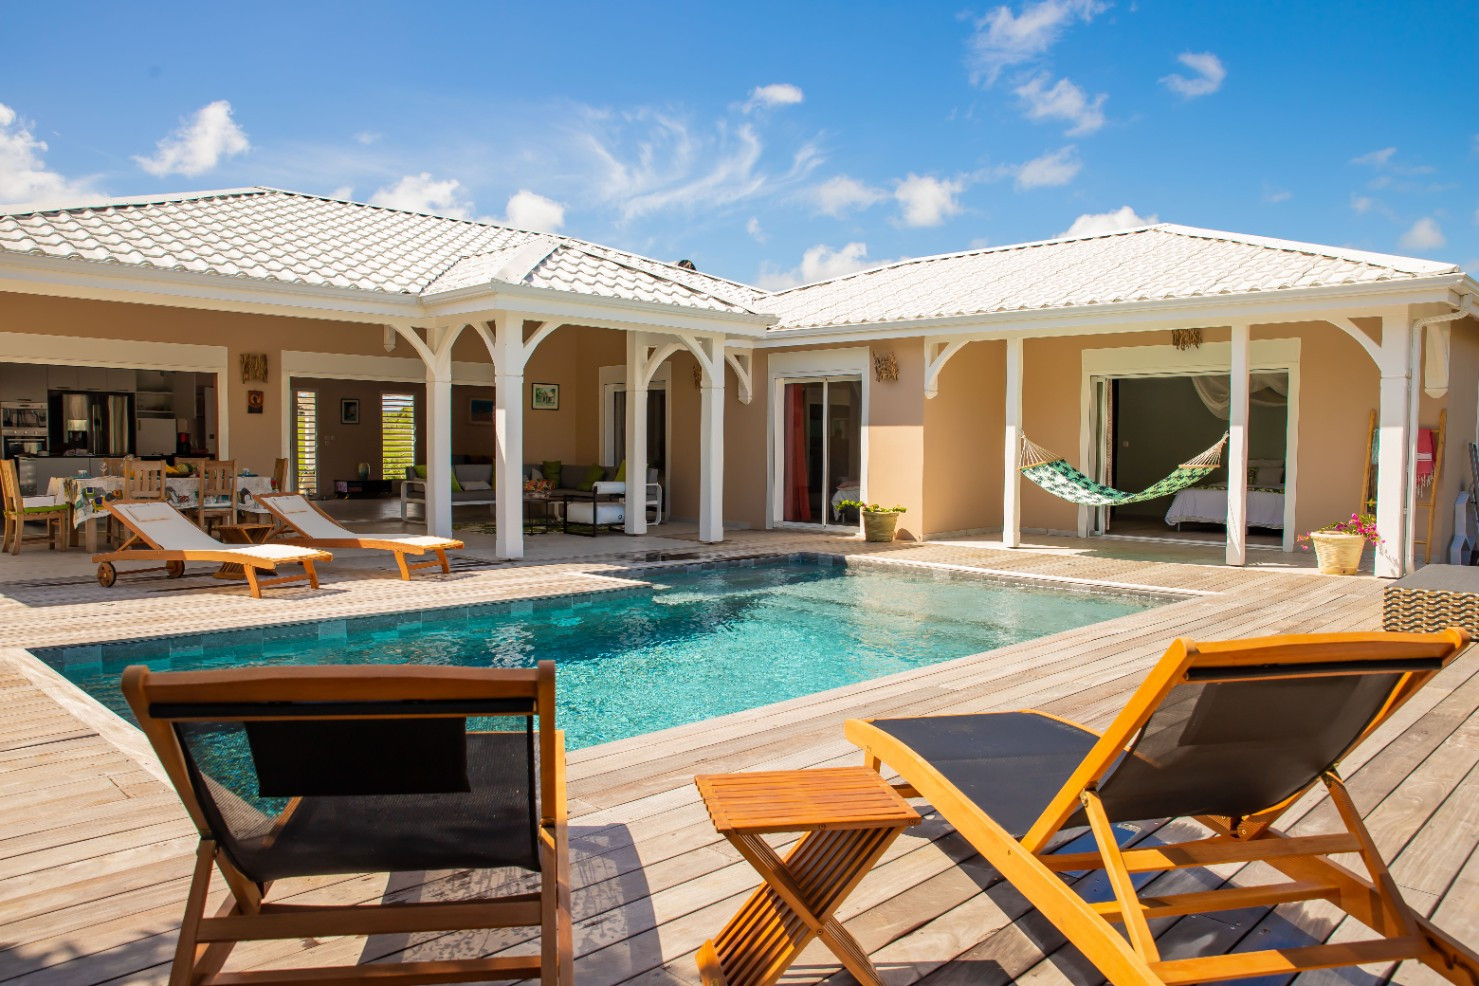 
                                                Location de vacances
                                                 ZeWelcome.com Villas en Guadeloupe en Loc@tion